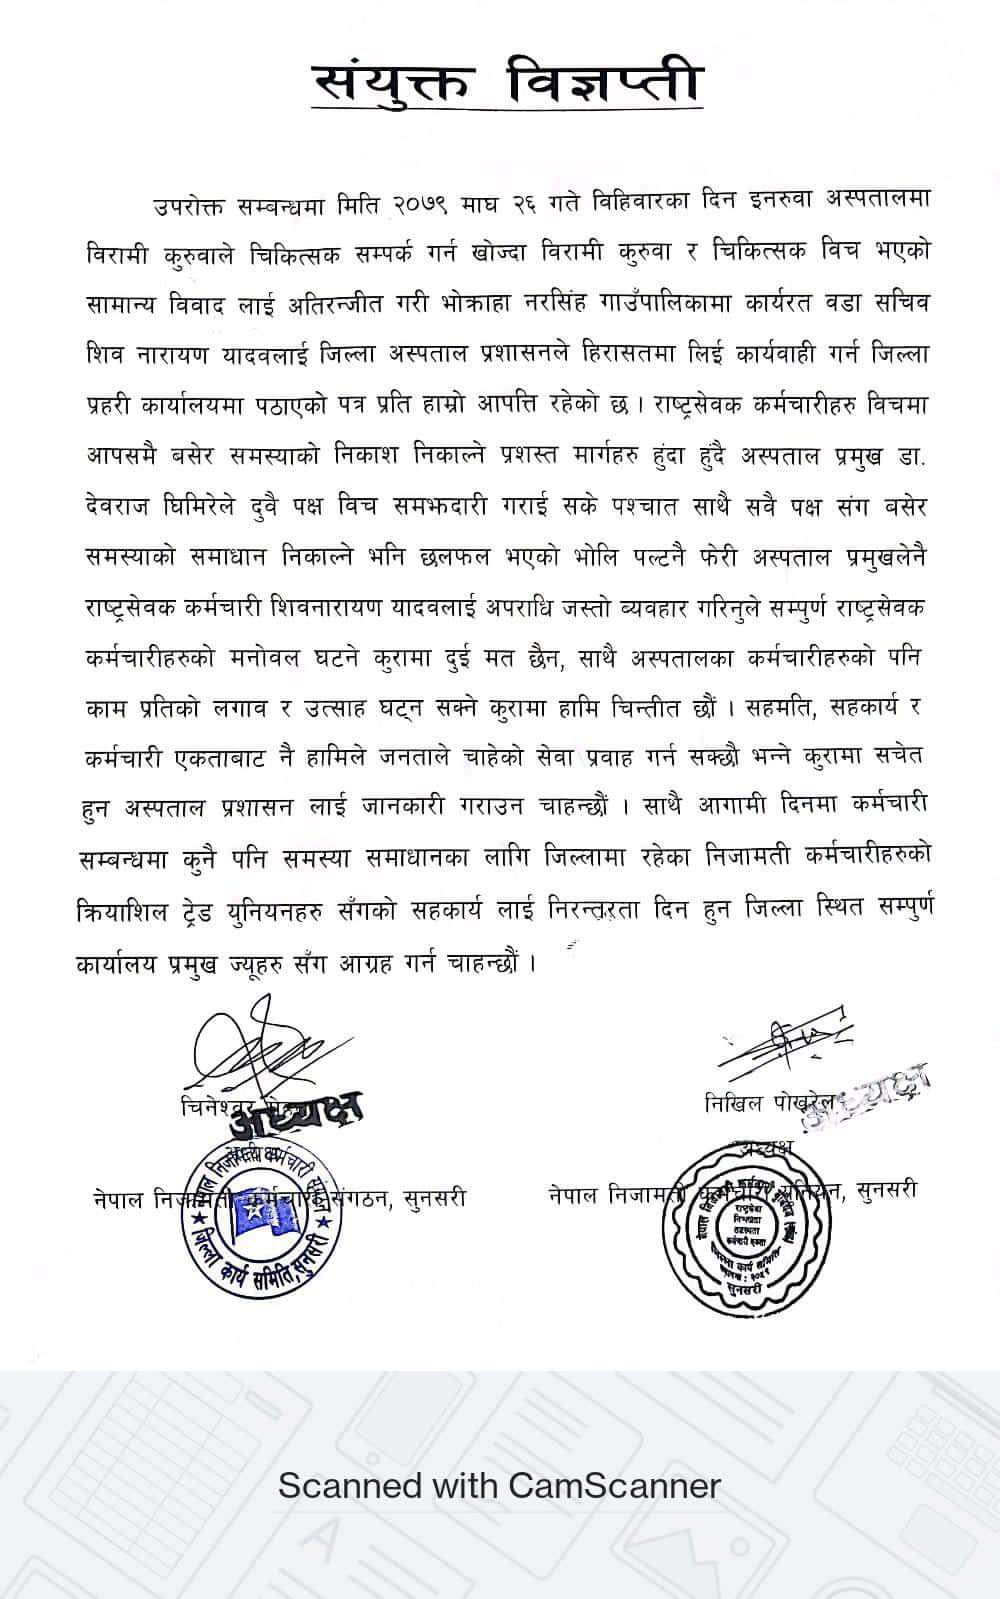 नेपाल निजामती कर्मचारी संगठन,सुनसरी र नेपाल निजामती कर्मचारी युनियन,सुनसरीकाे संयुक्त विज्ञप्ती